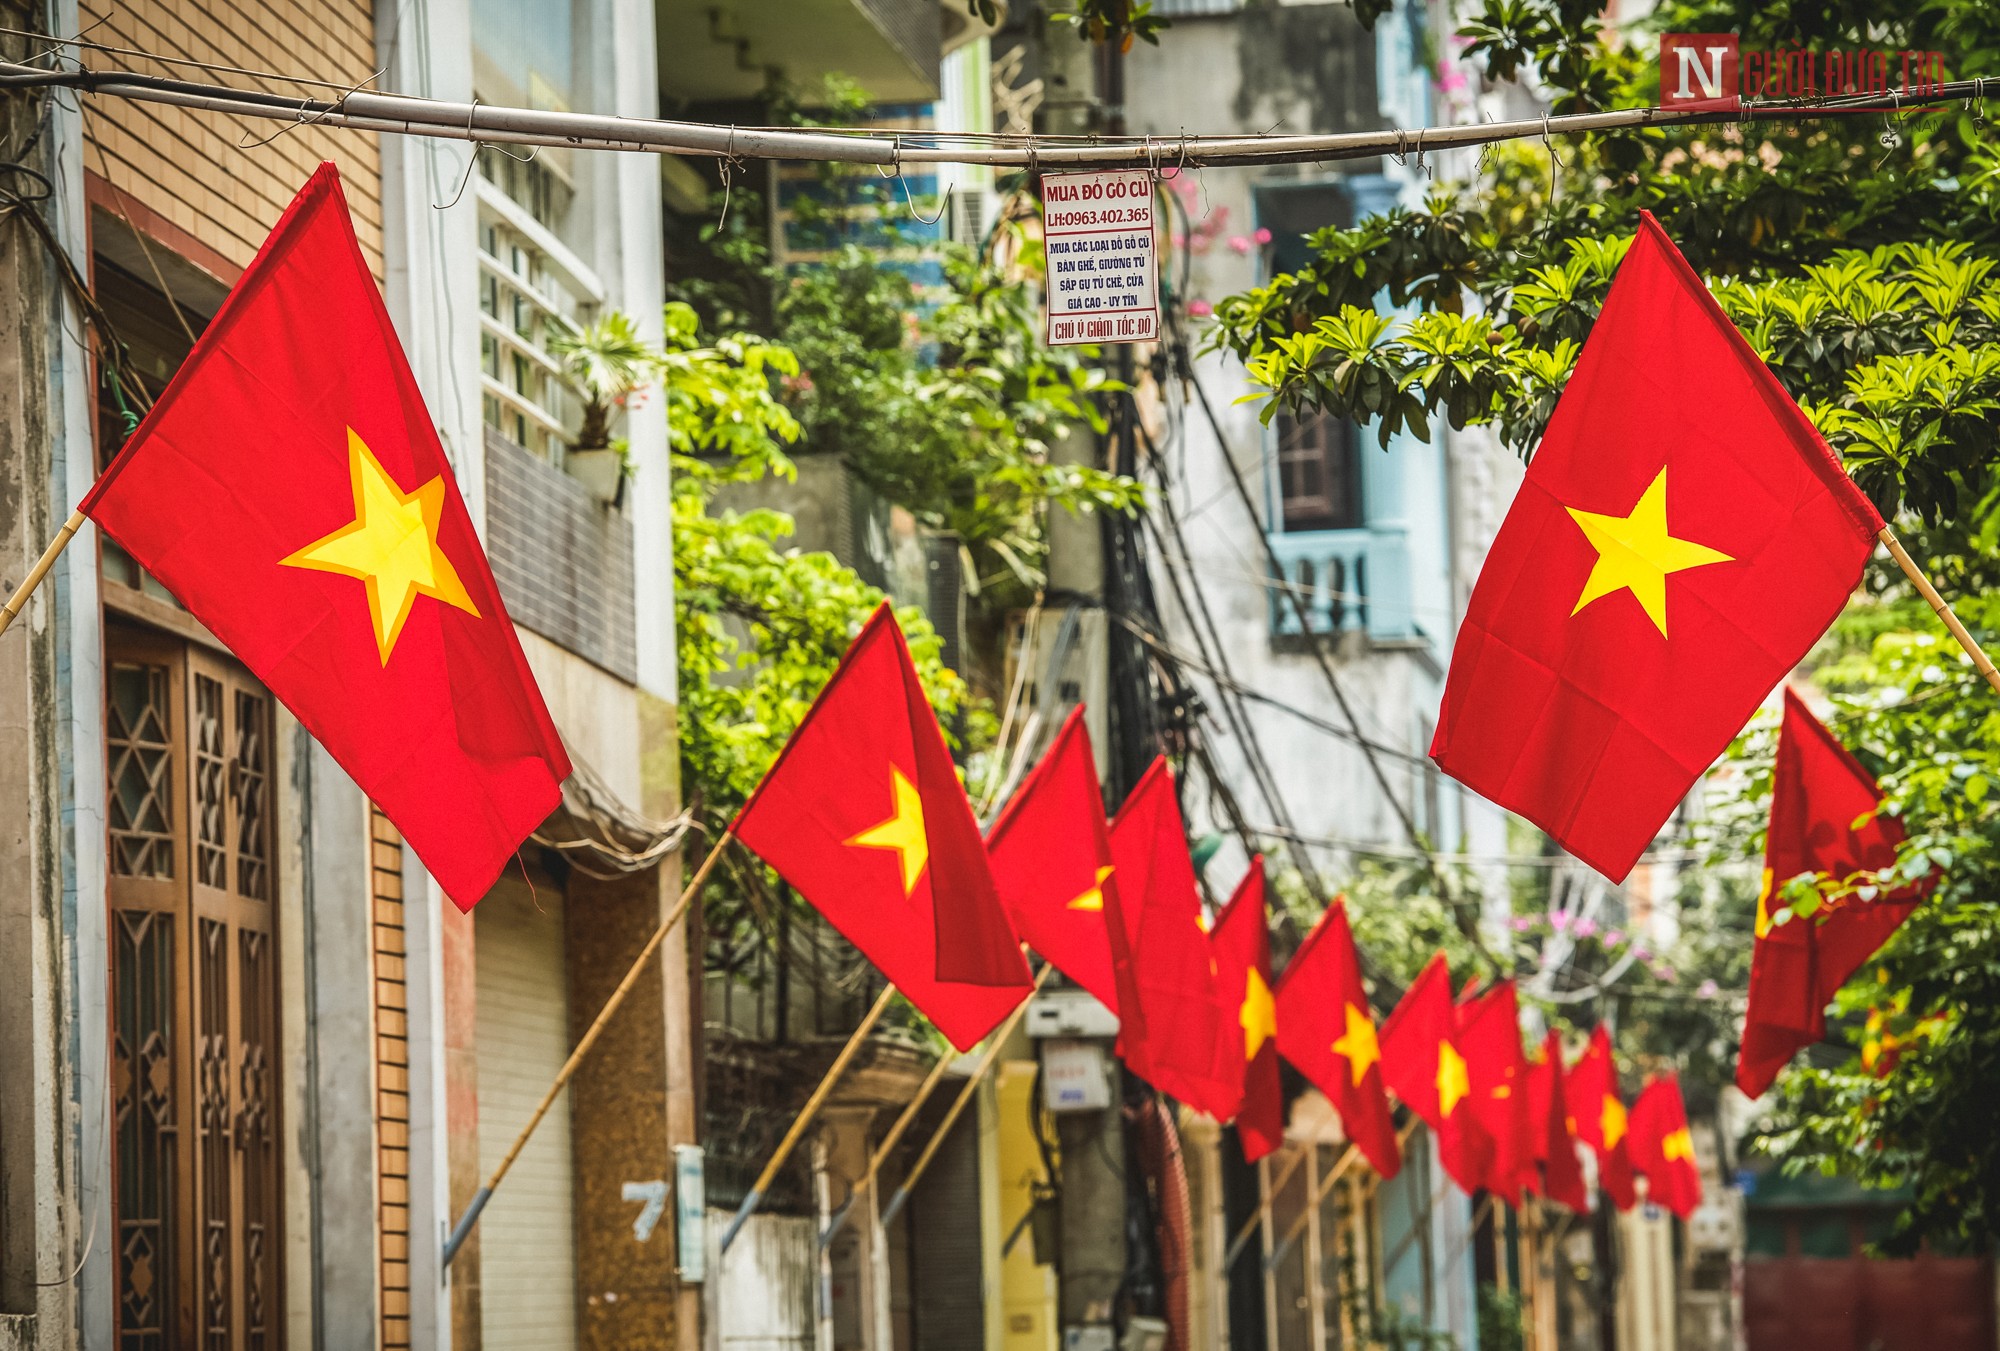 Treo cờ Việt Nam đẹp là một cách để thể hiện lòng yêu nước. Với ảnh được chúng tôi cập nhật cho bạn, bạn sẽ có được những hình ảnh tuyệt vời về cờ quốc gia đang tung bay ở khắp mọi nơi tại Việt Nam năm